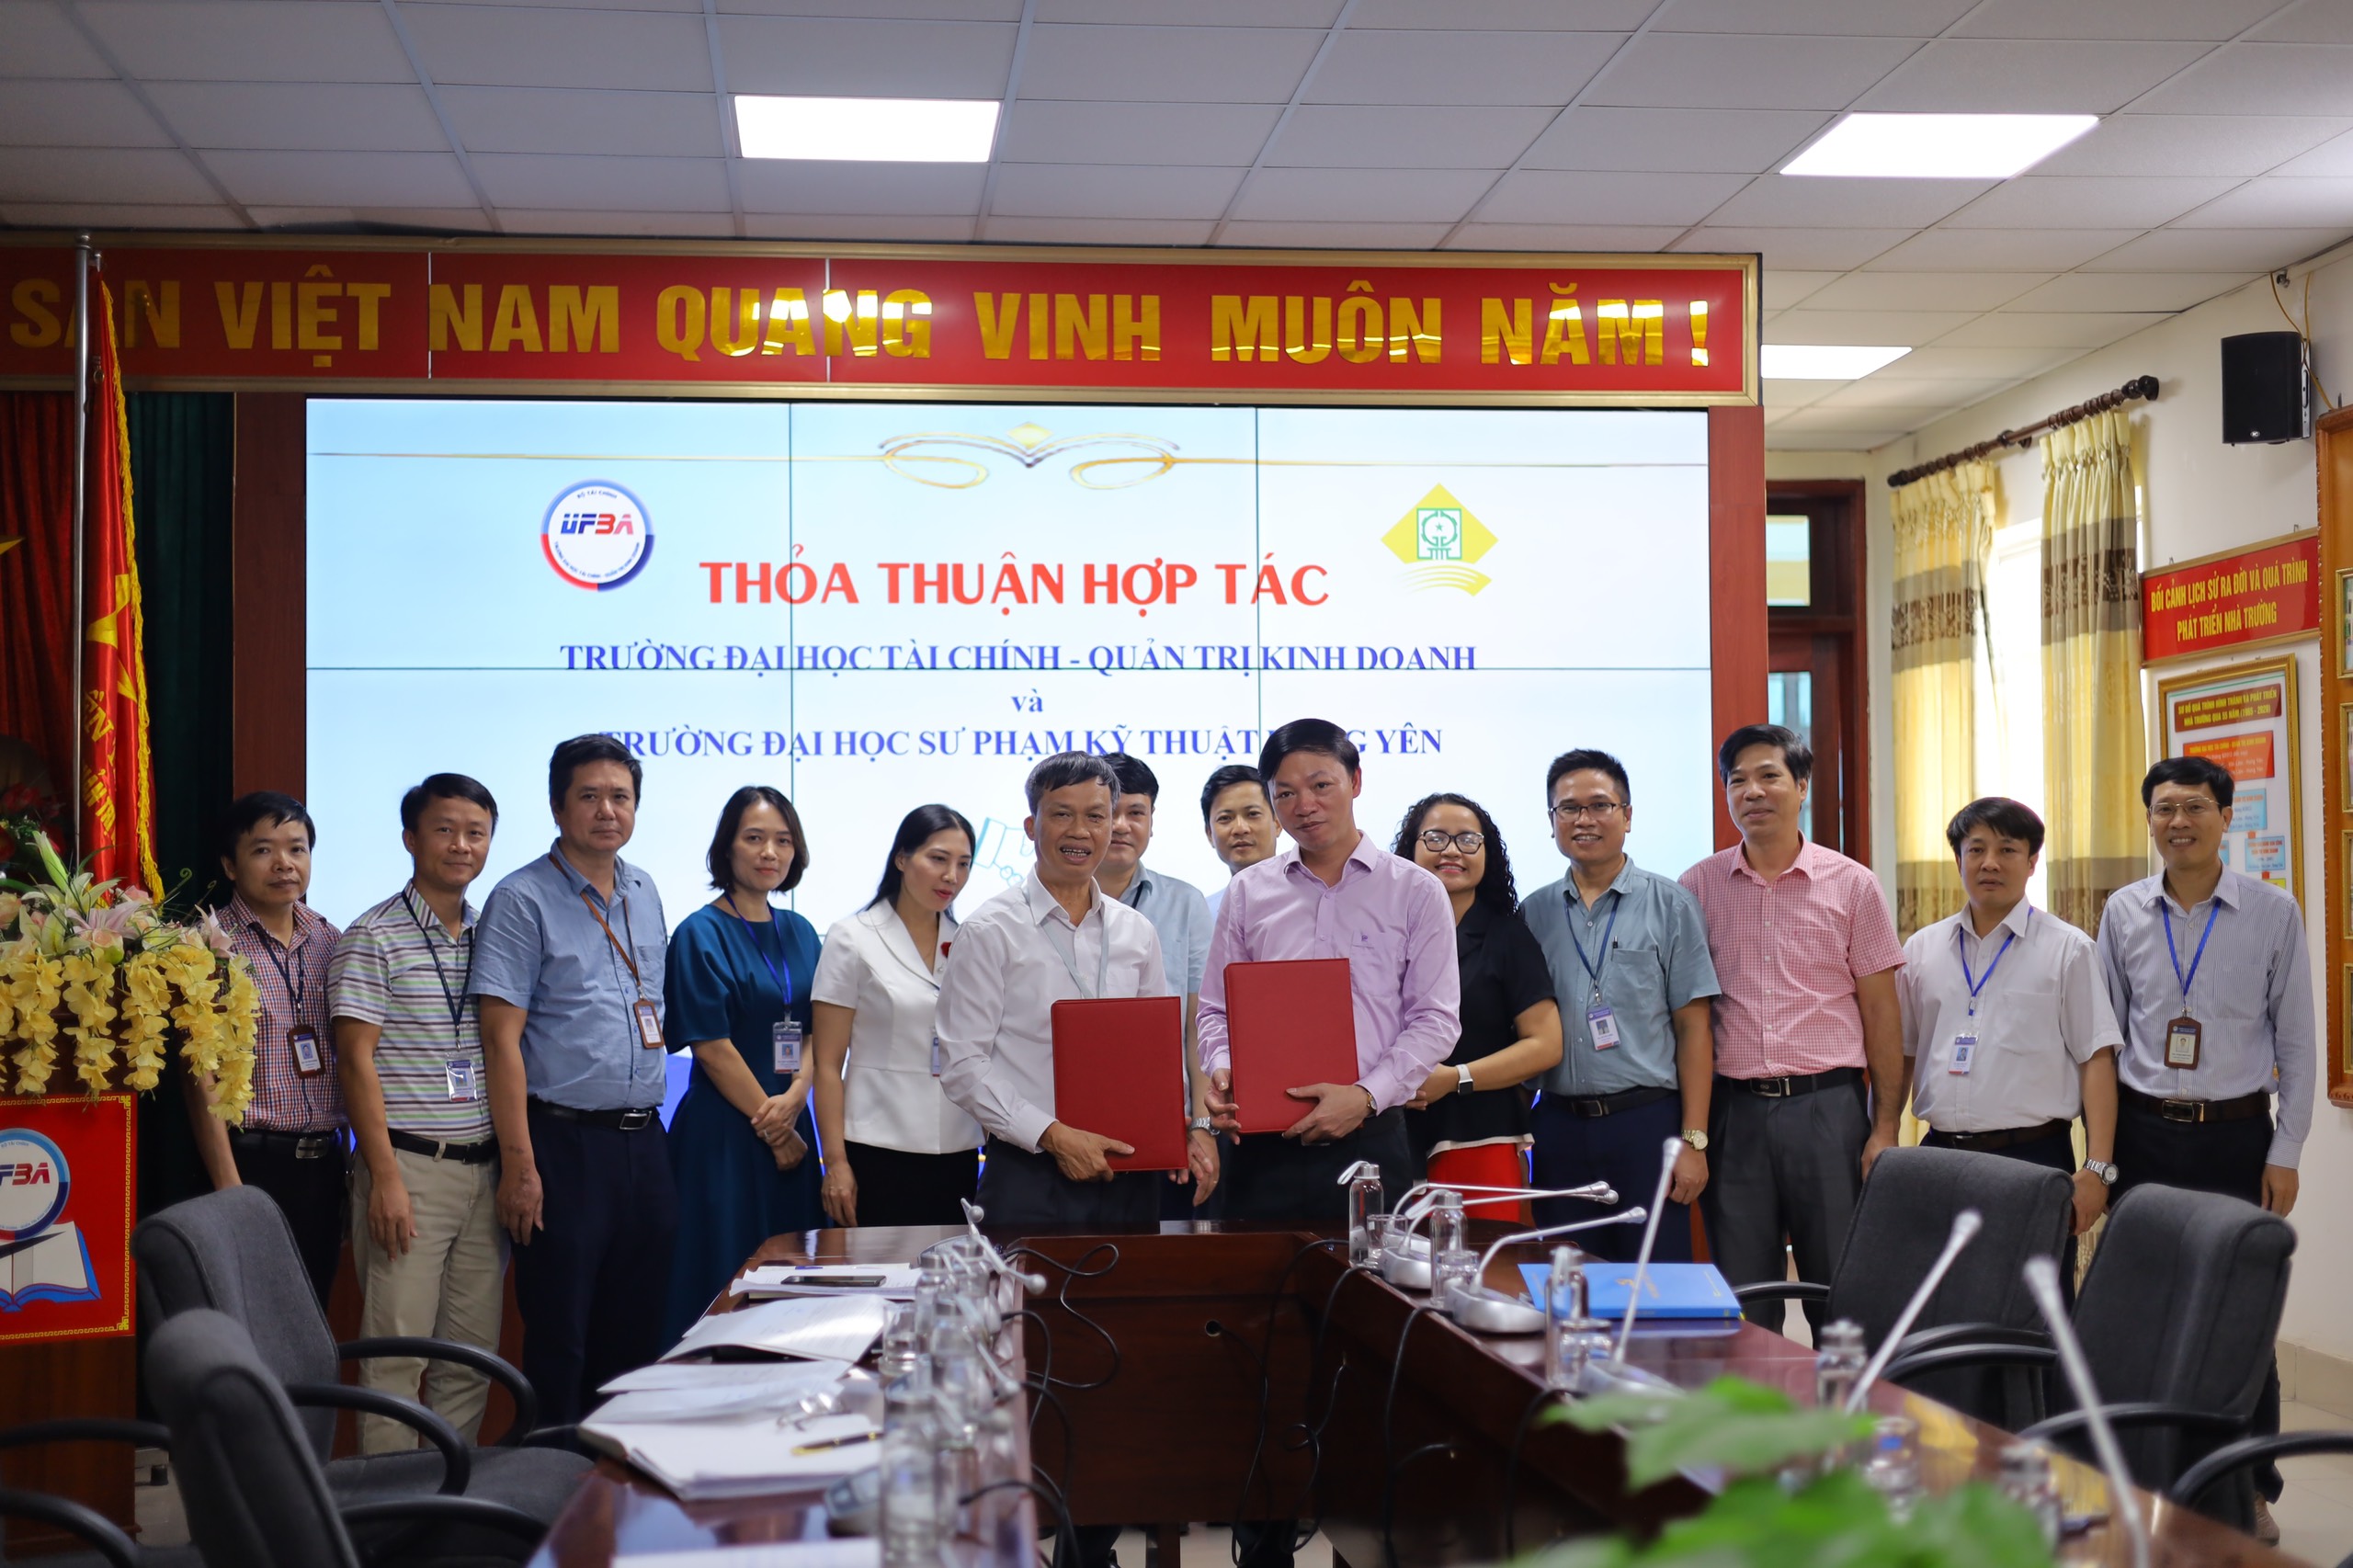 Thỏa thuận hợp tác giữa trường Đại học Tài chính - Quản trị kinh doanh và trường Đại học Sư phạm Kỹ thuật Hưng Yên